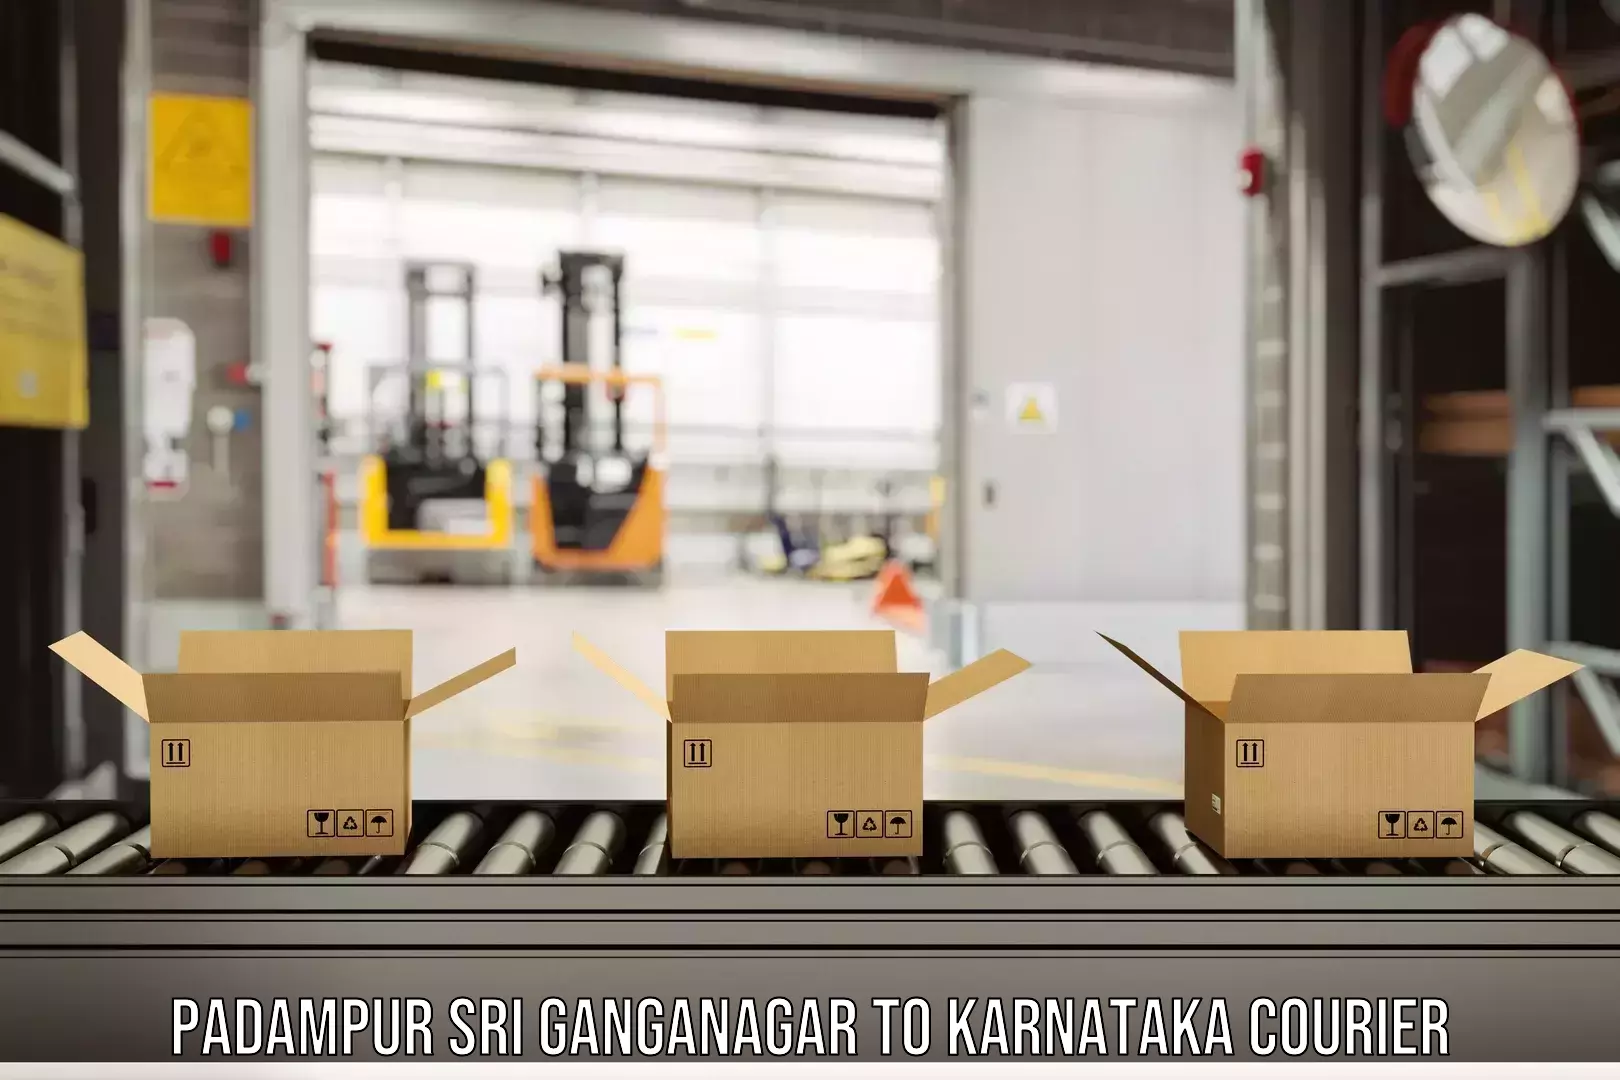 Express package handling Padampur Sri Ganganagar to Soraba